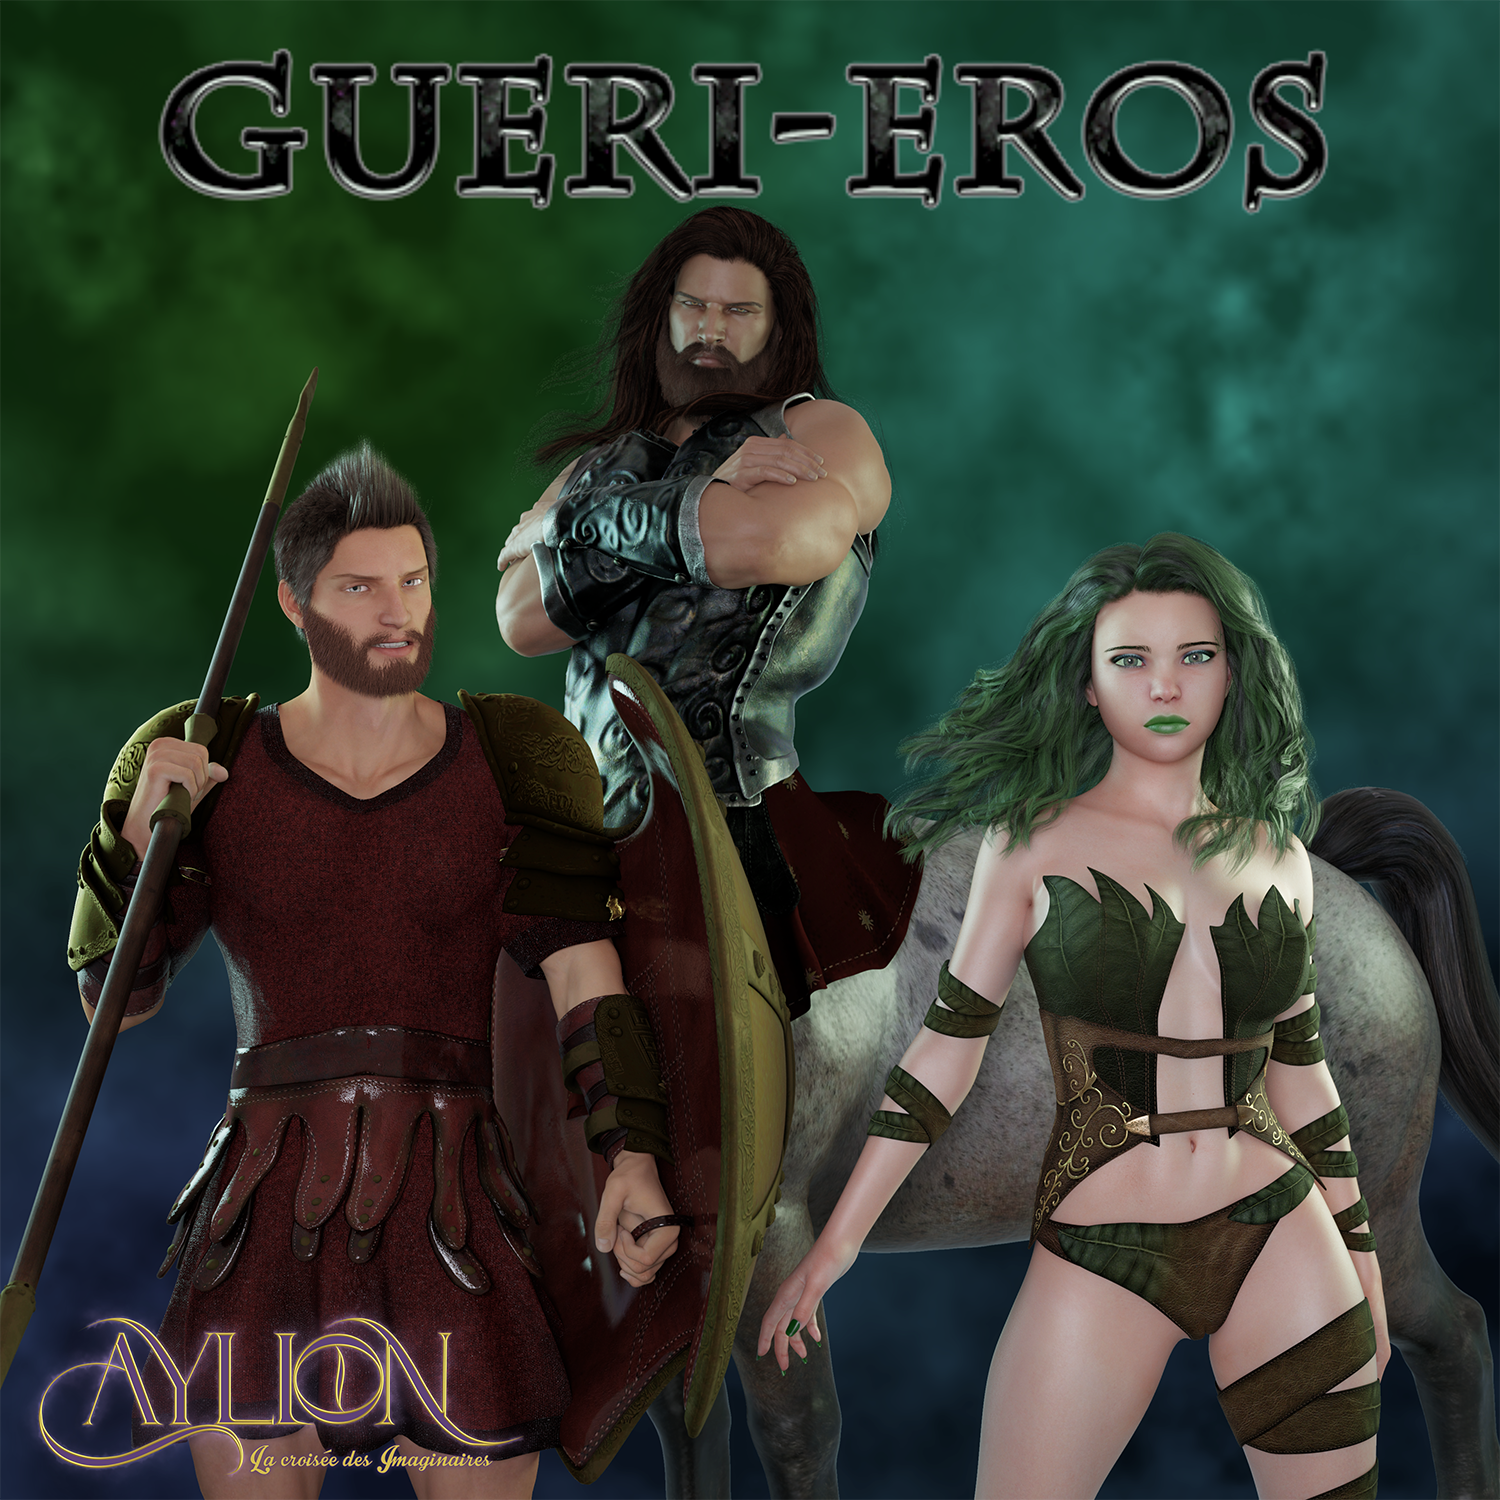 Titre : Gueri-Eros. Logo Aylion. Les 3 personnages principaux de gueri-eros.